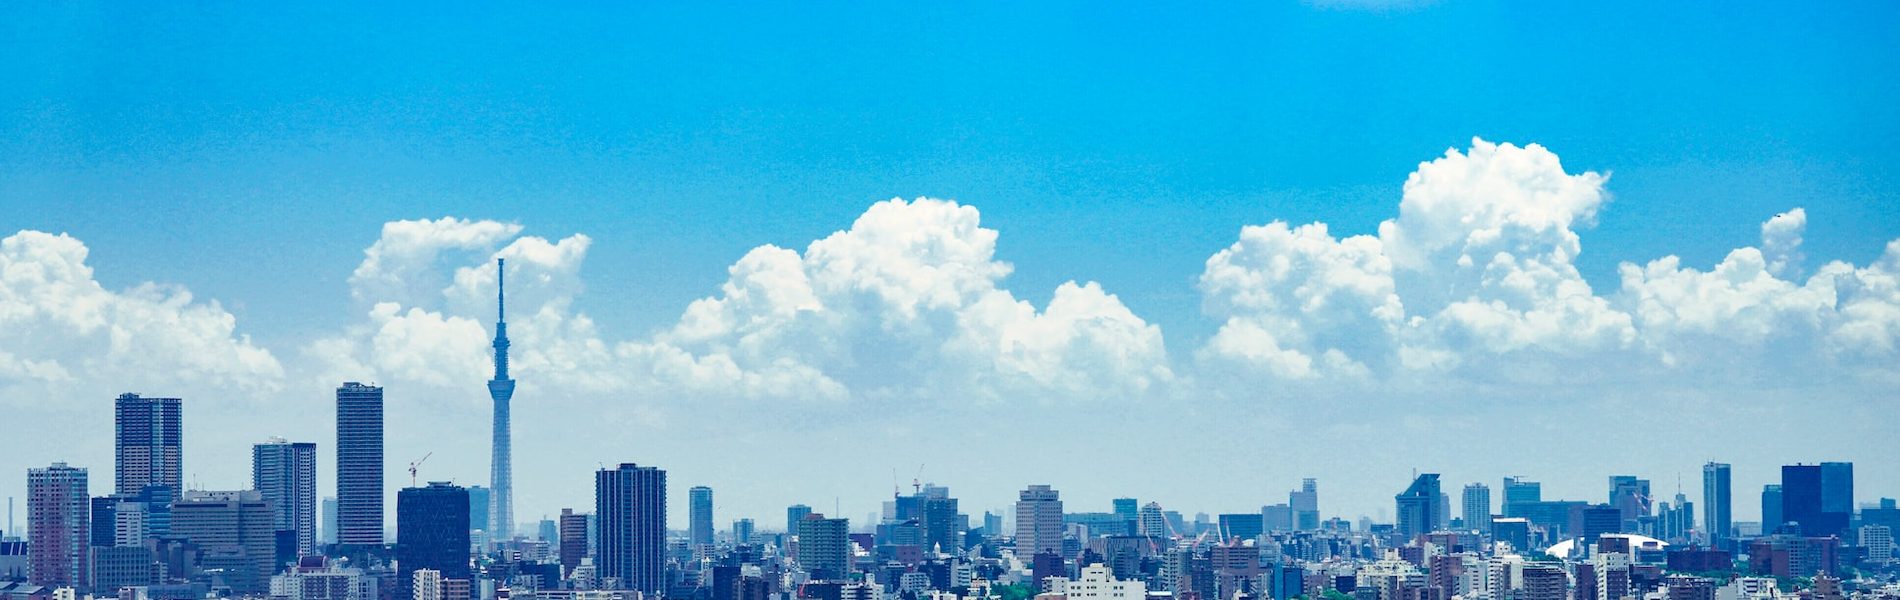 スカイツリーと東京の青空の画像